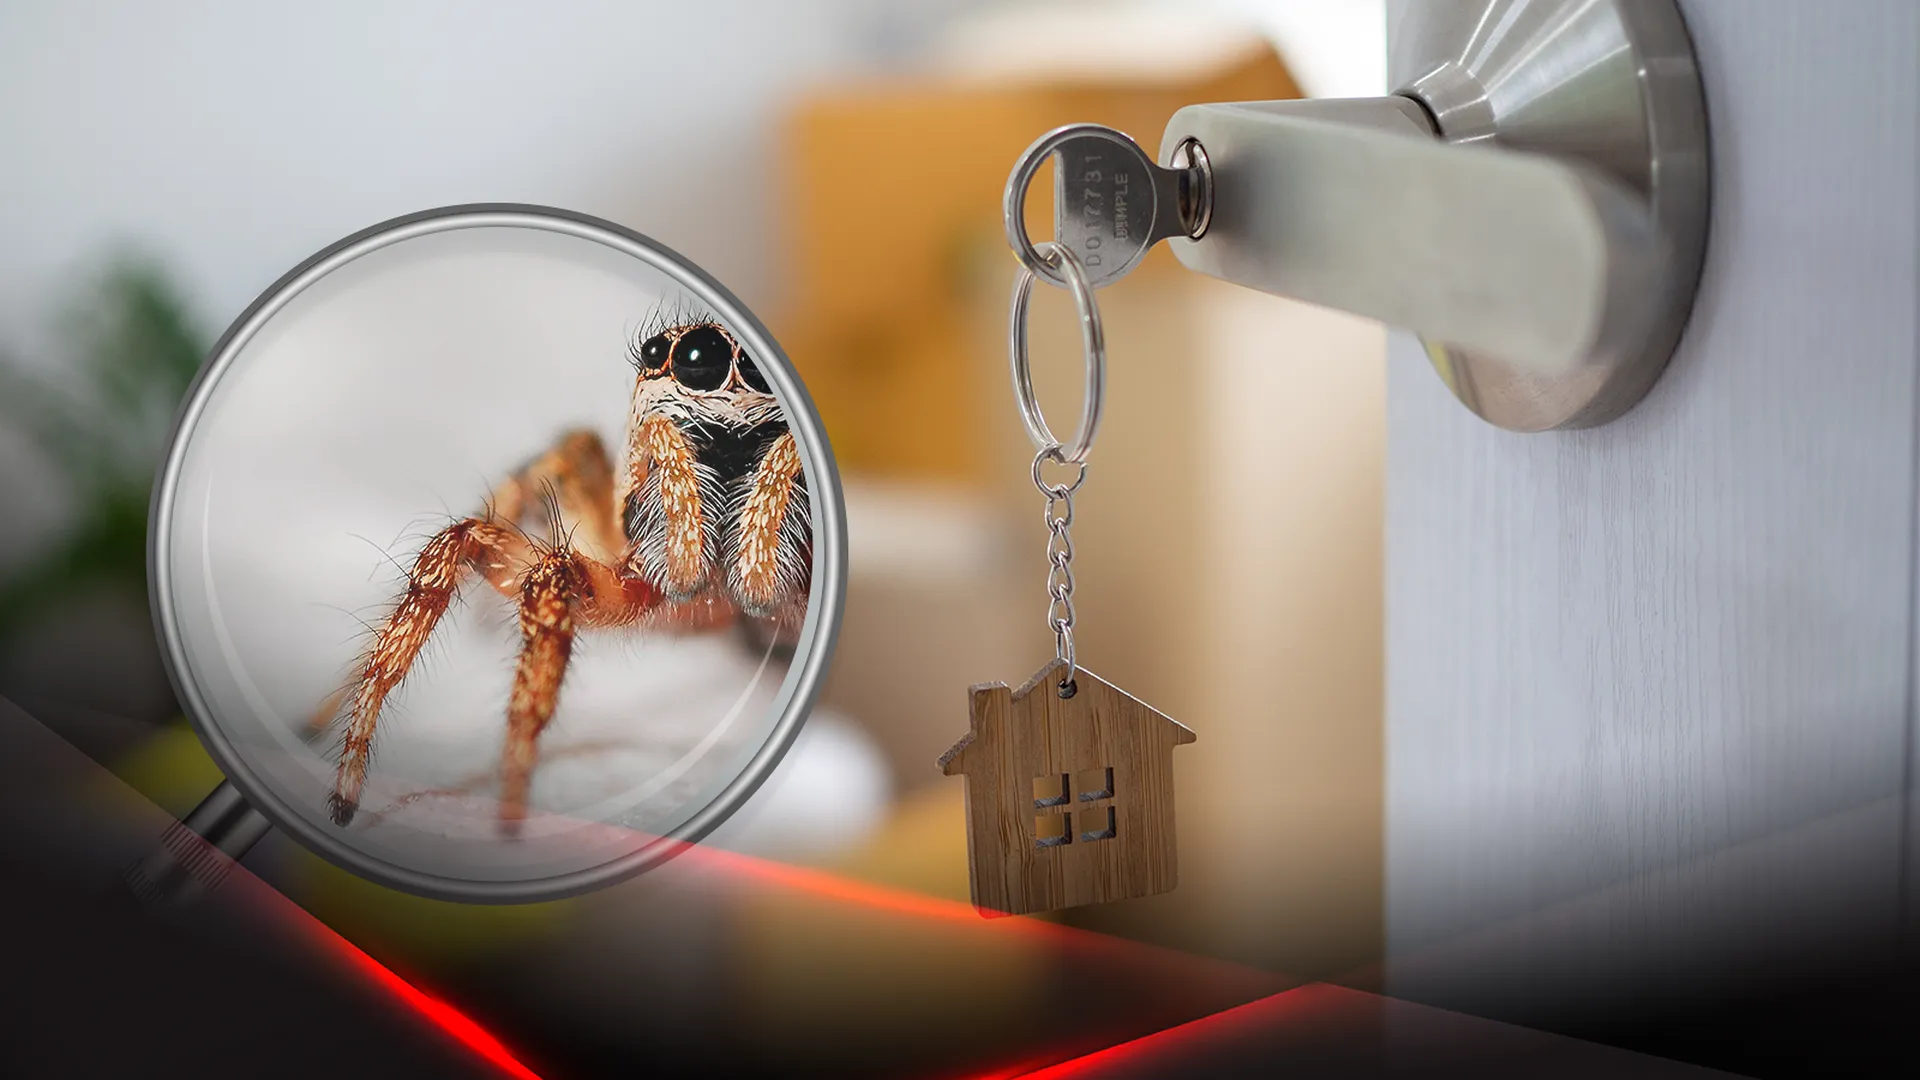 Открытая дверь квартиры и паук в увеличительном стекле